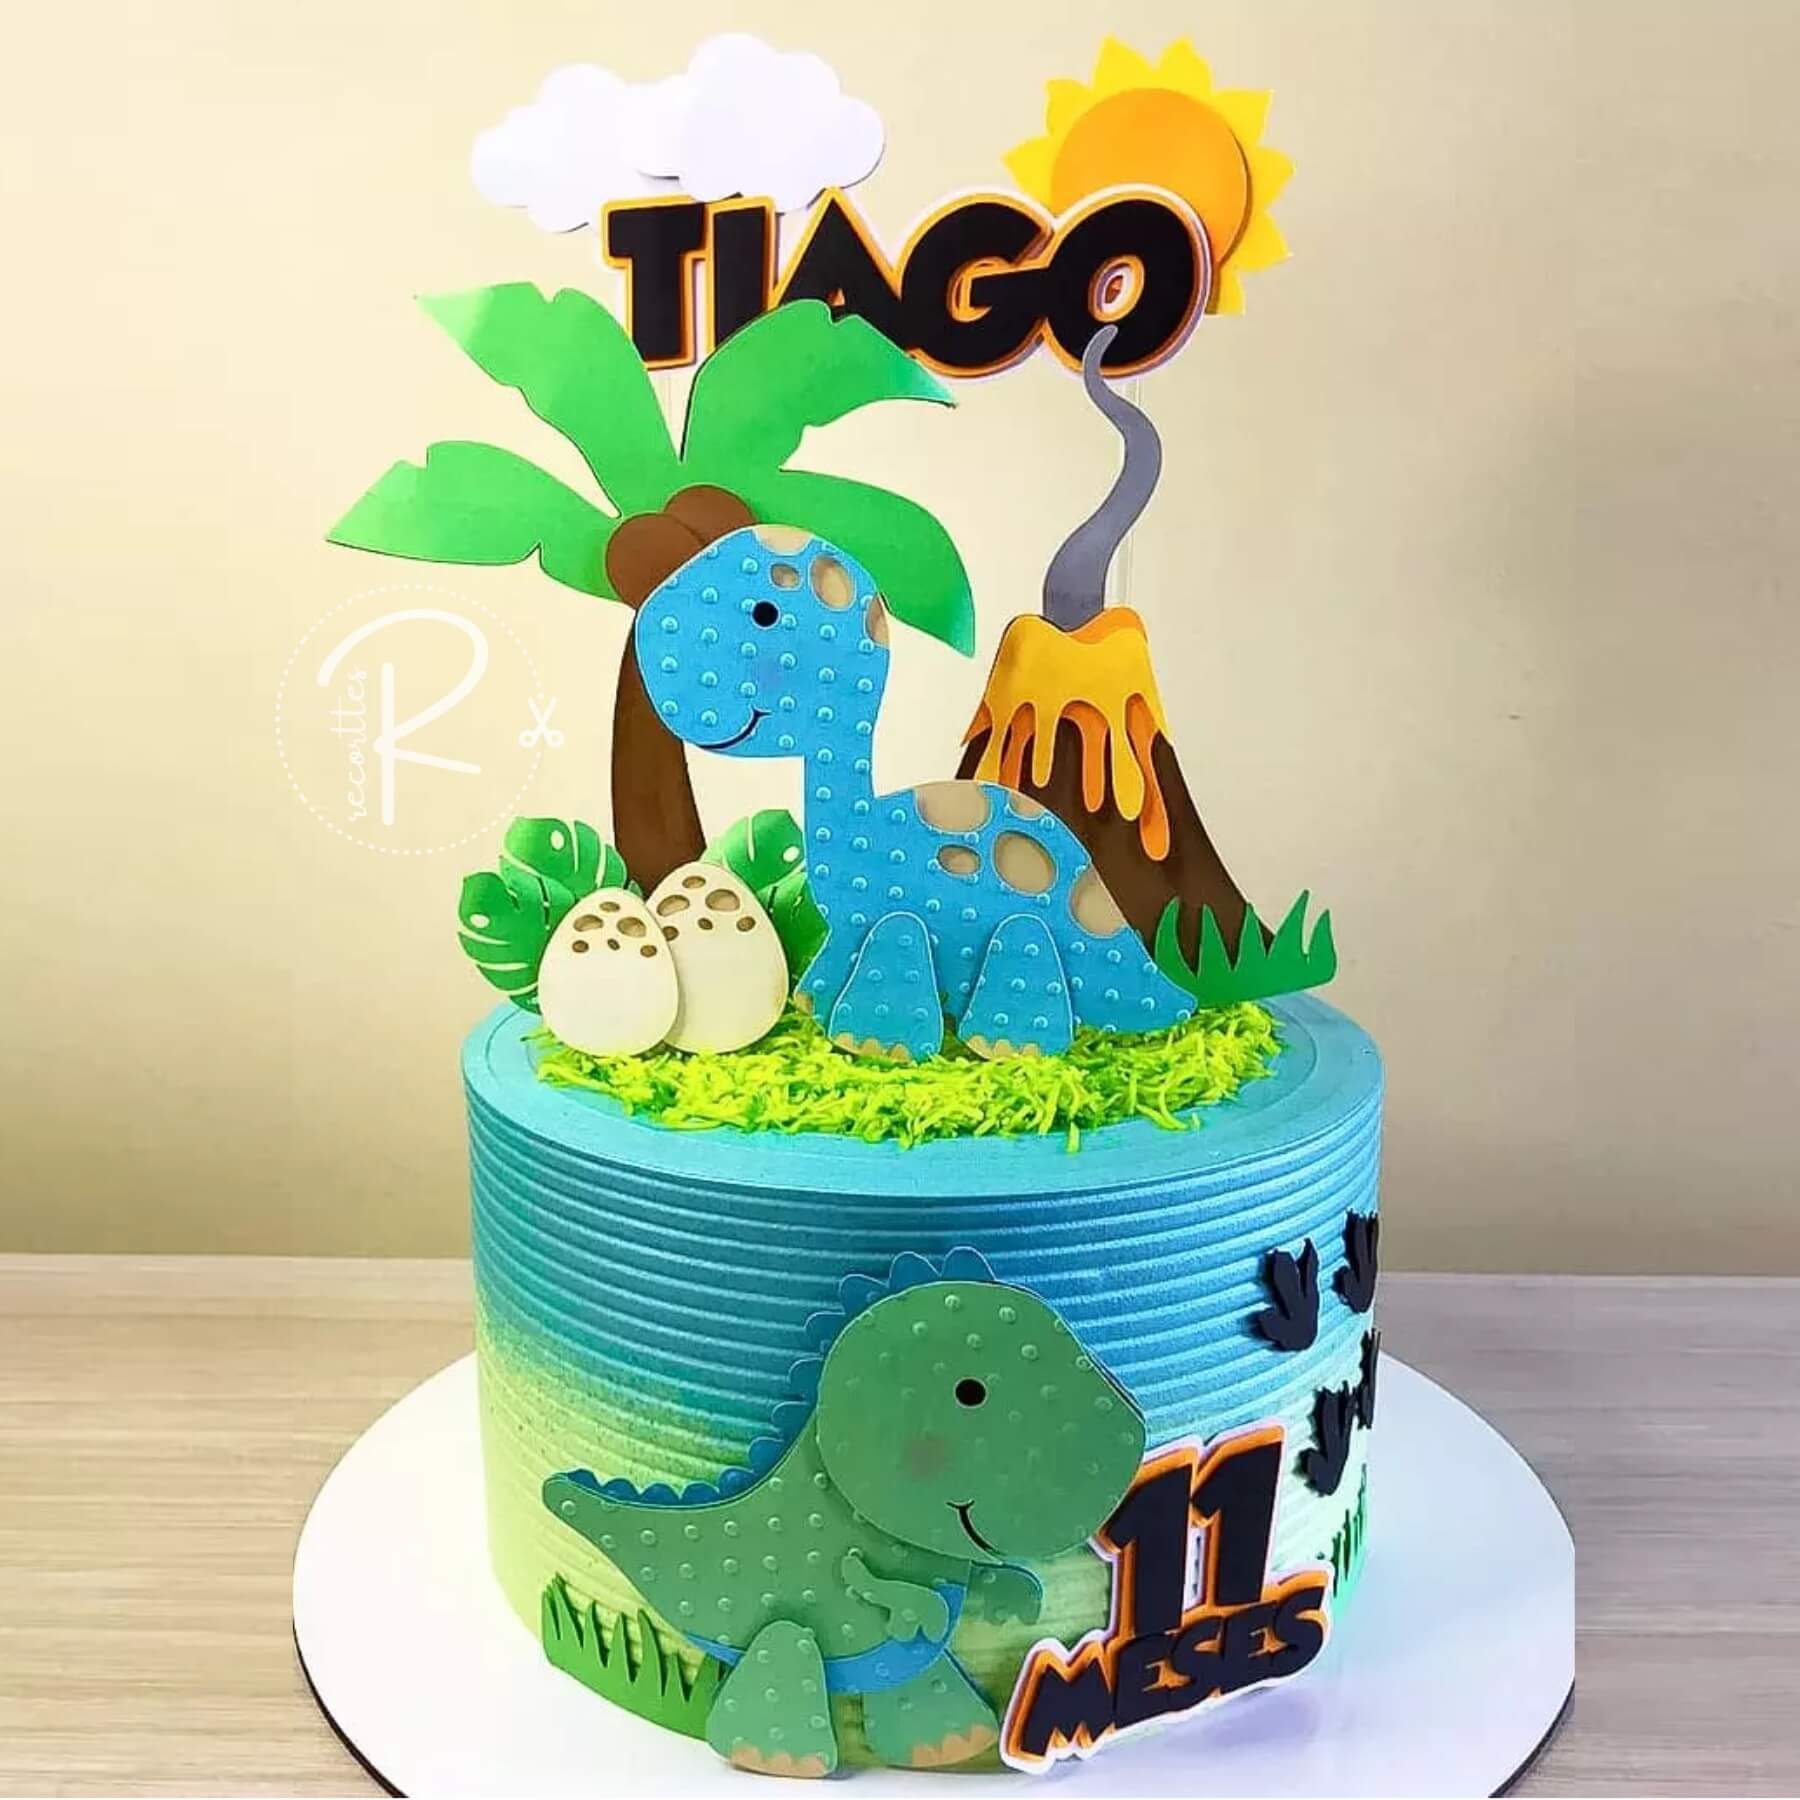 Topo de bolo para imprimir grátis infantil e adulto: Topo de bolo dinossauro